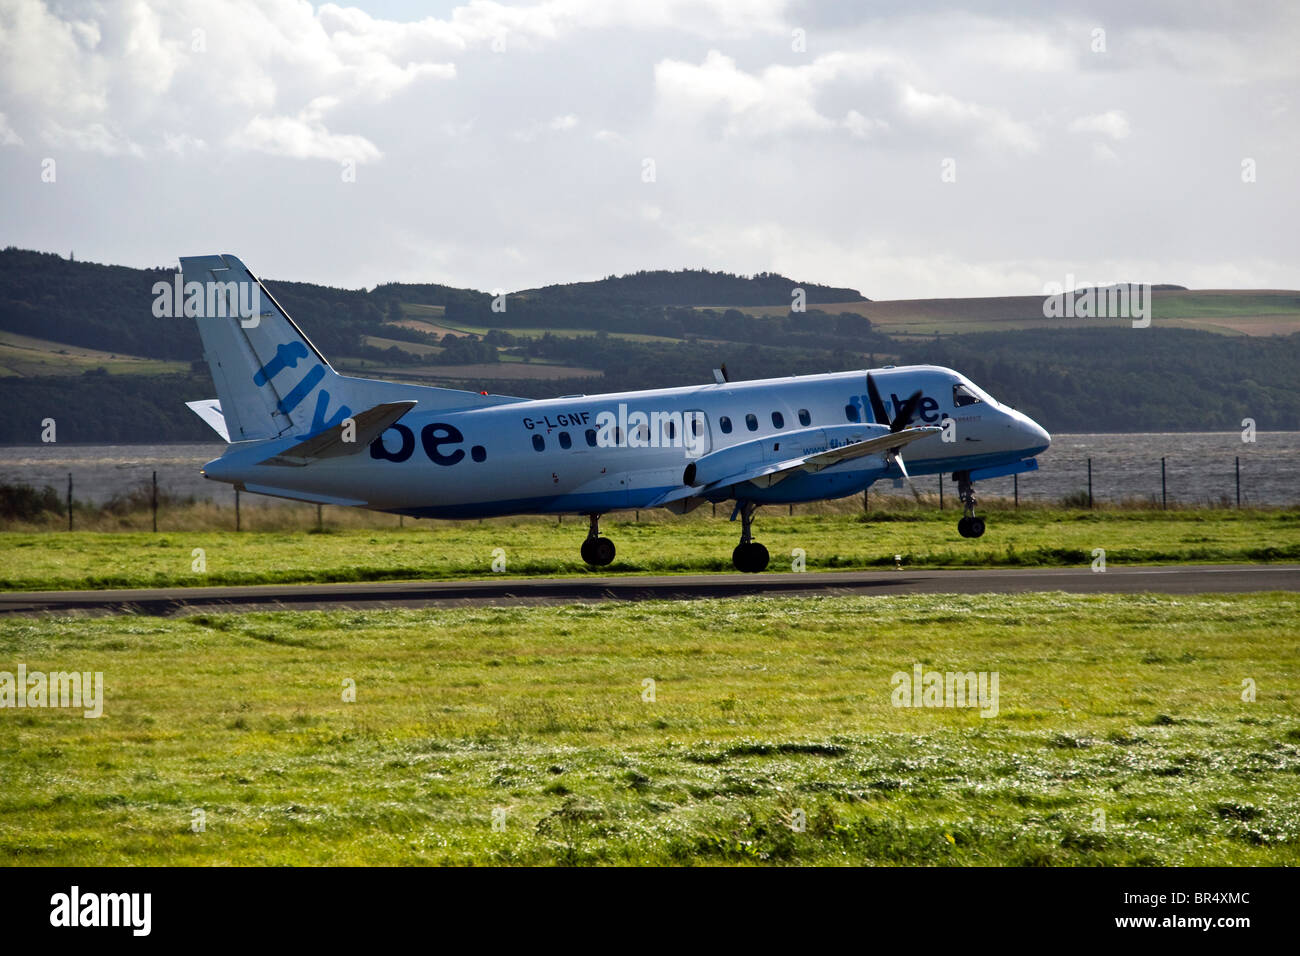 SAAB 340 Flybe avion à turbopropulseurs de quitter la piste après le décollage de l'aéroport de Dundee, Royaume-Uni Banque D'Images